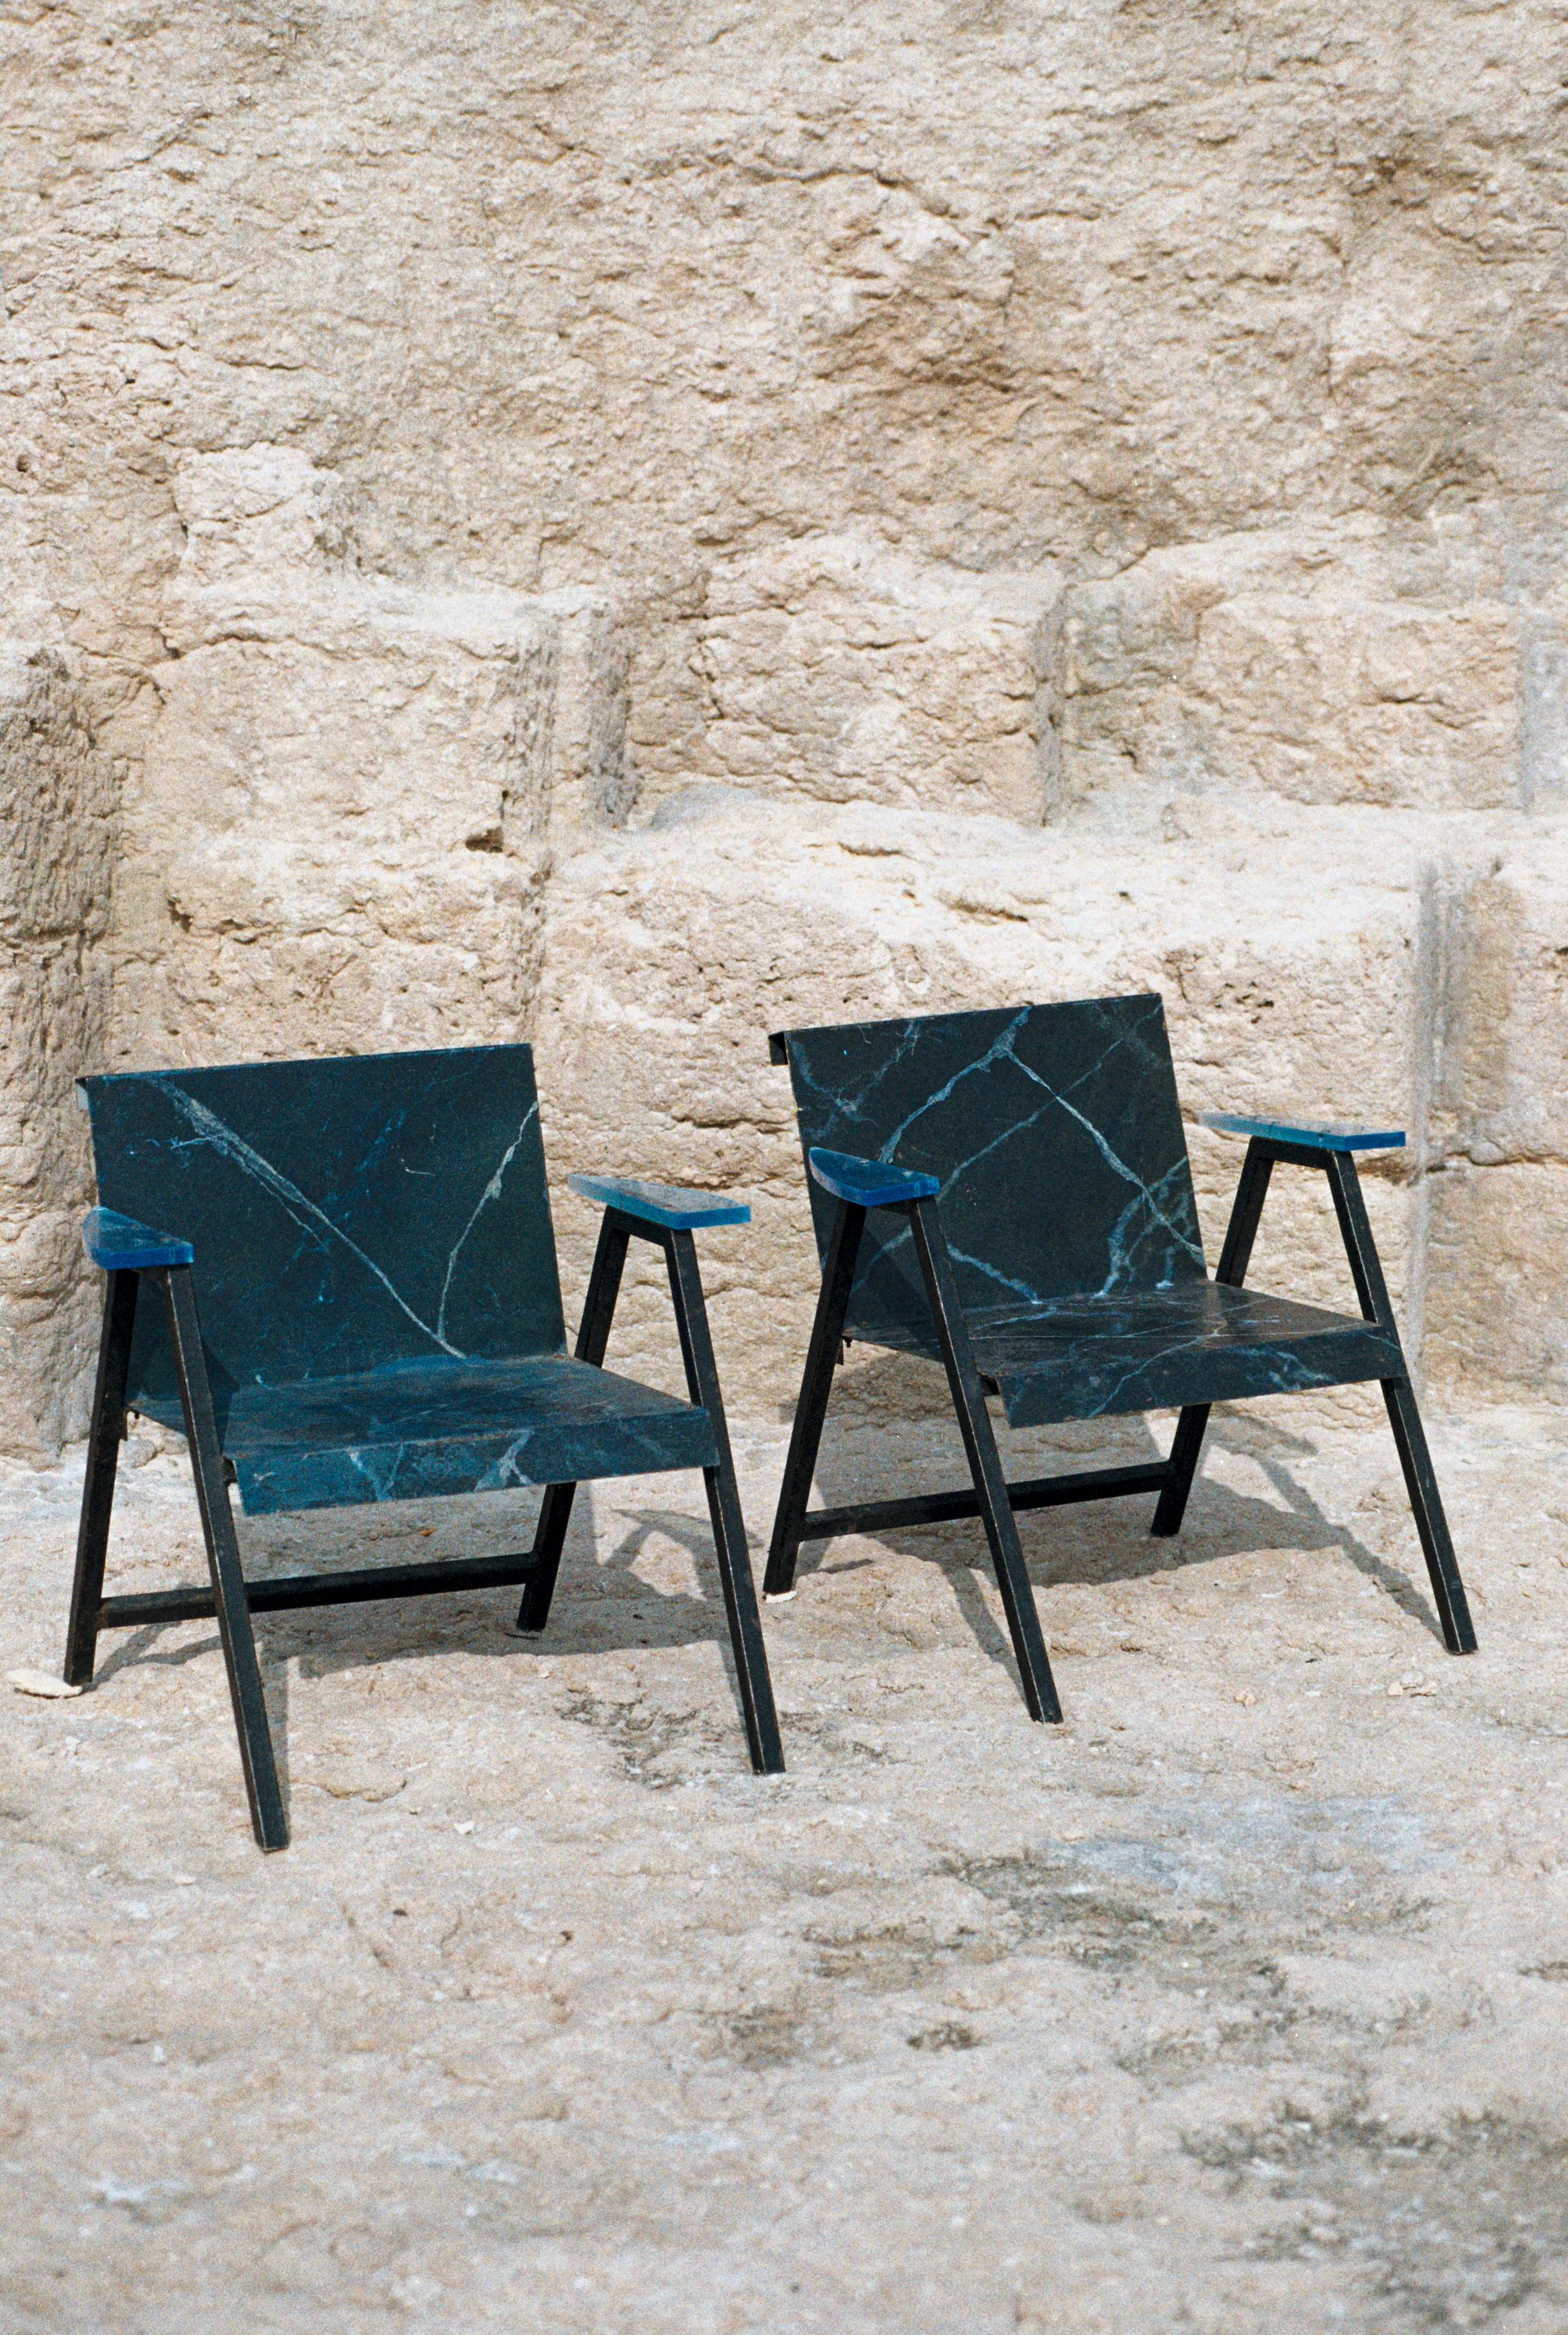 Paire de chaises post-modernes en métal et résine, production française, vers 1980. 

Cette paire de fauteuils à l'allure imposante est composée de formes géométriques dessinées sur différentes surfaces, révélant ainsi plusieurs perspectives. 

